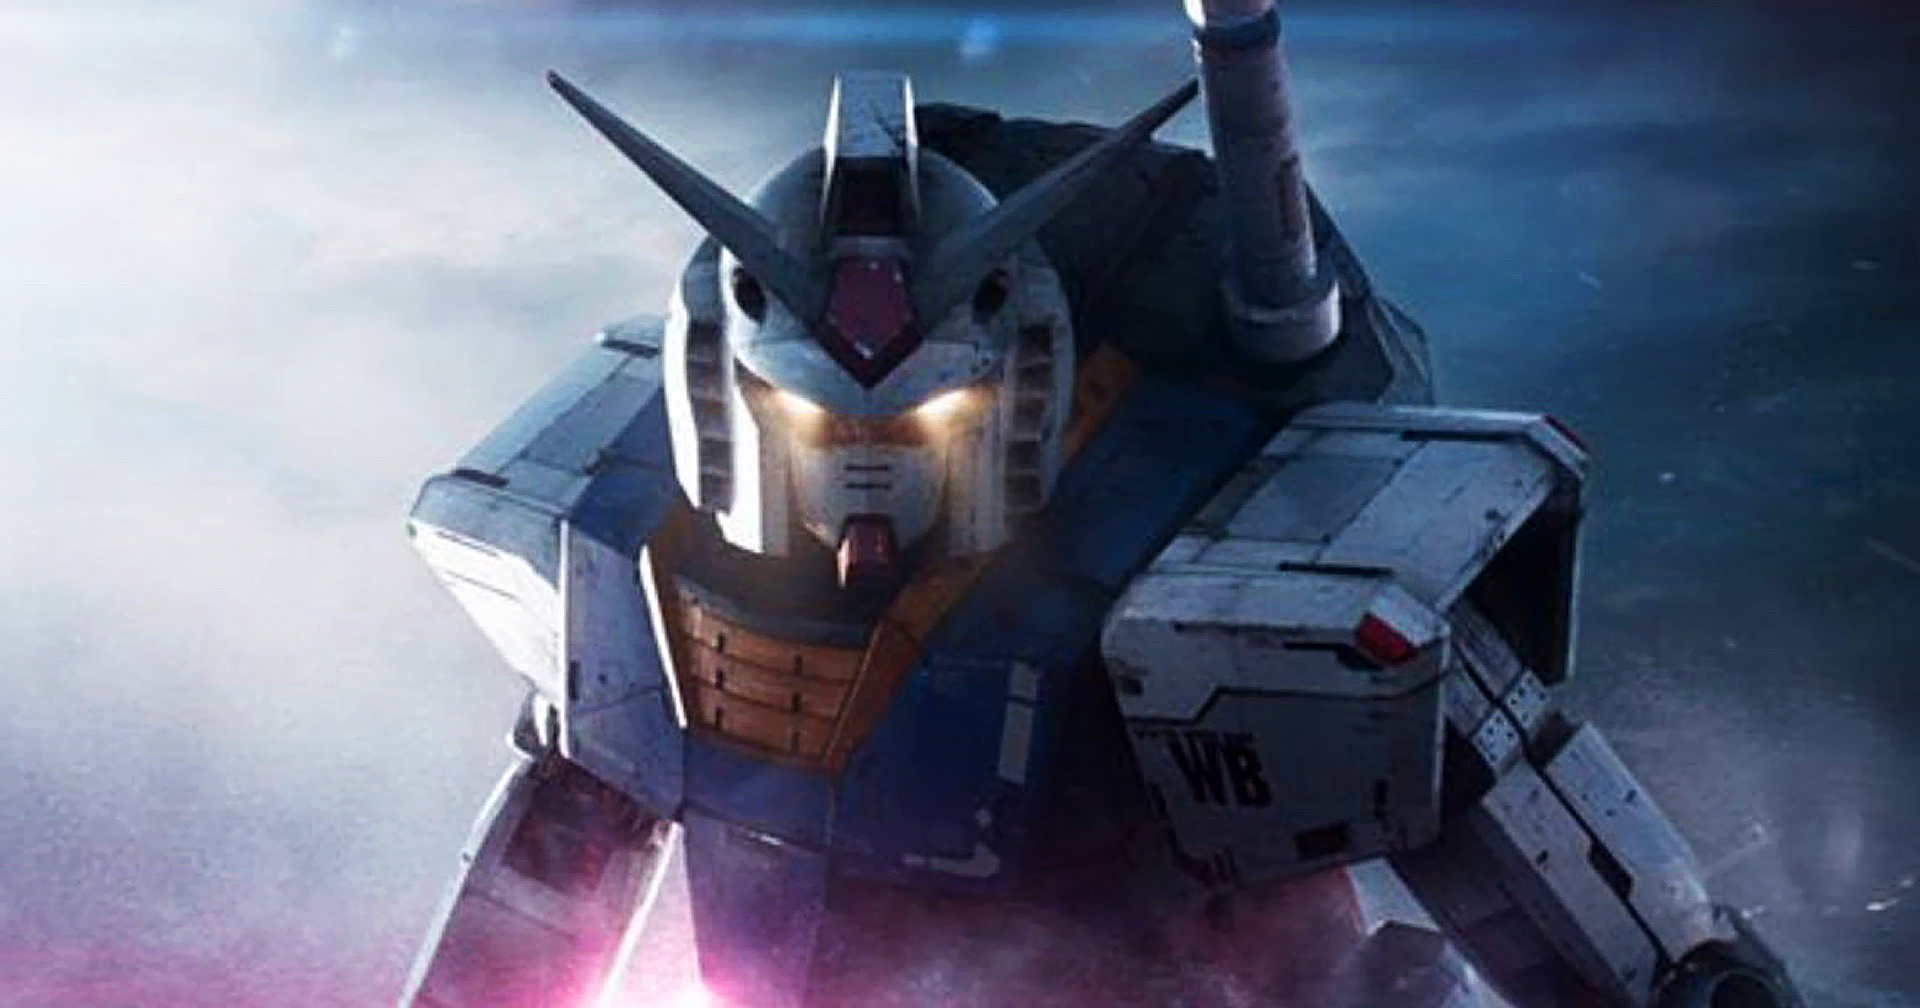 ฝันที่เป็นจริง! Netflix เตรียมสร้างภาพยนตร์ Gundam : ได้ผู้กำกับ Kong: Skull Island กุมบังเหียน